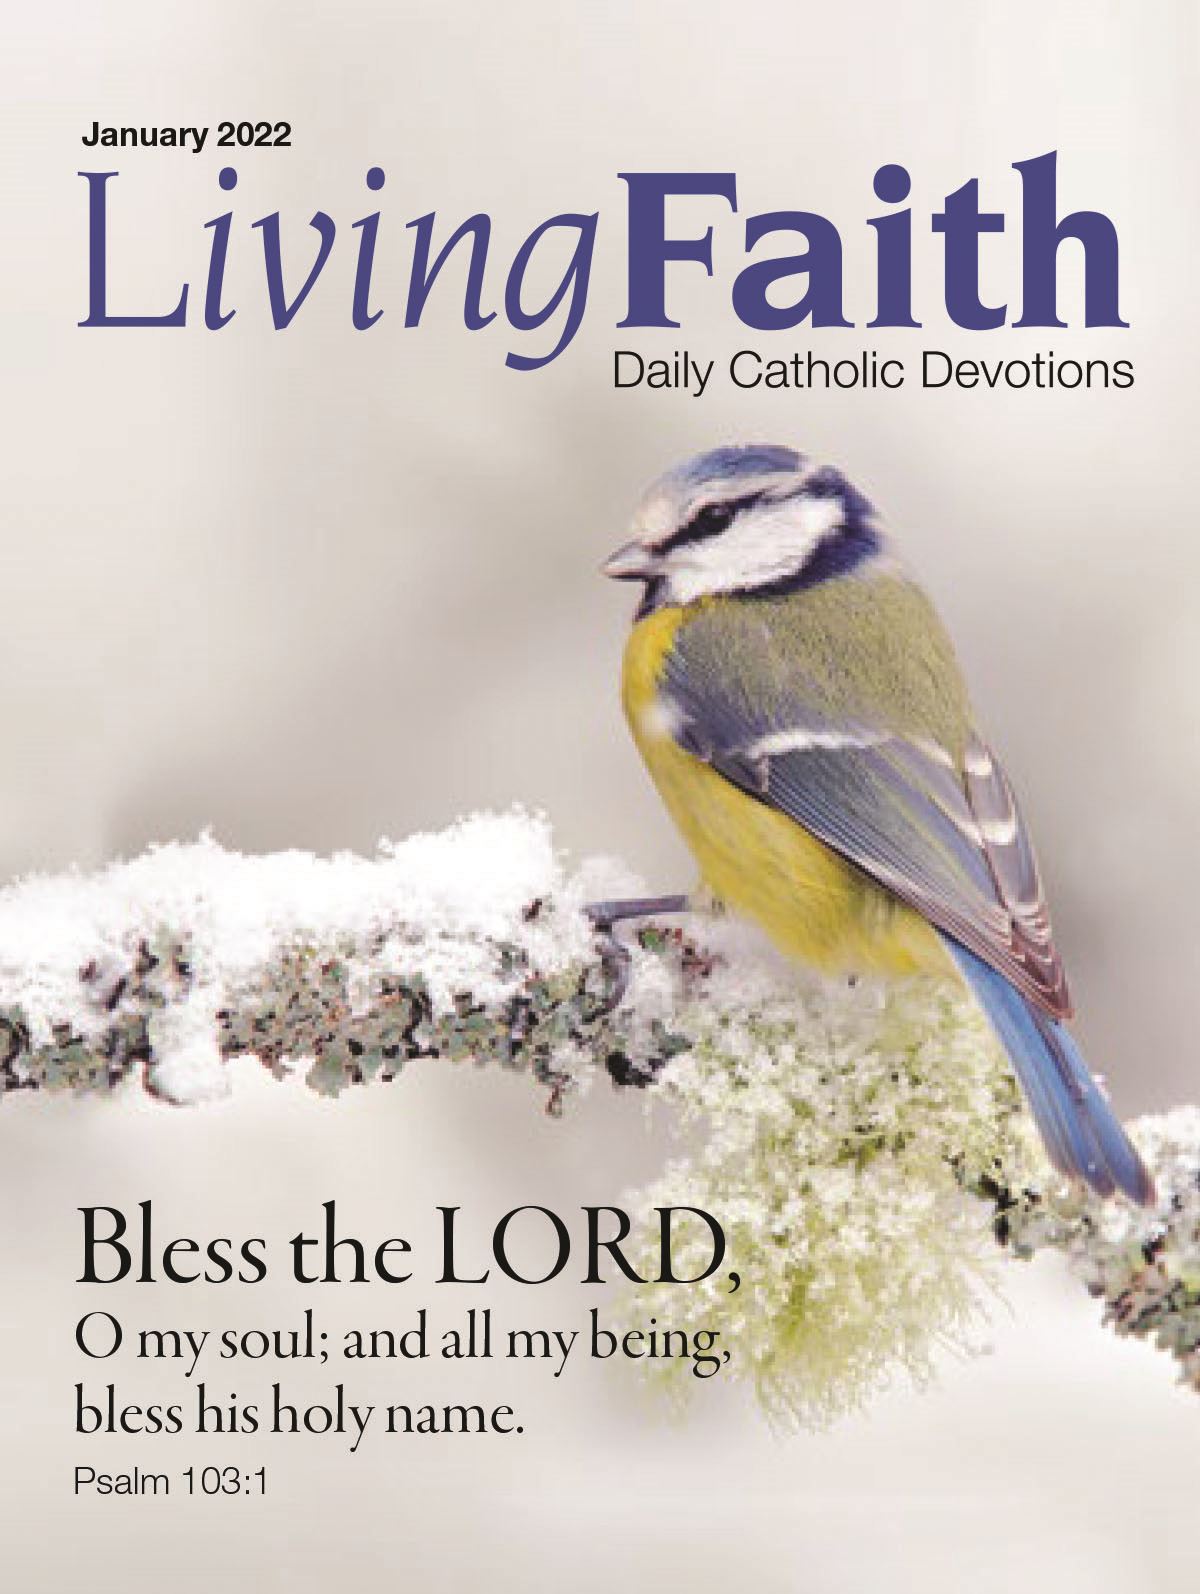 Living Faith (Jan/Feb/March)